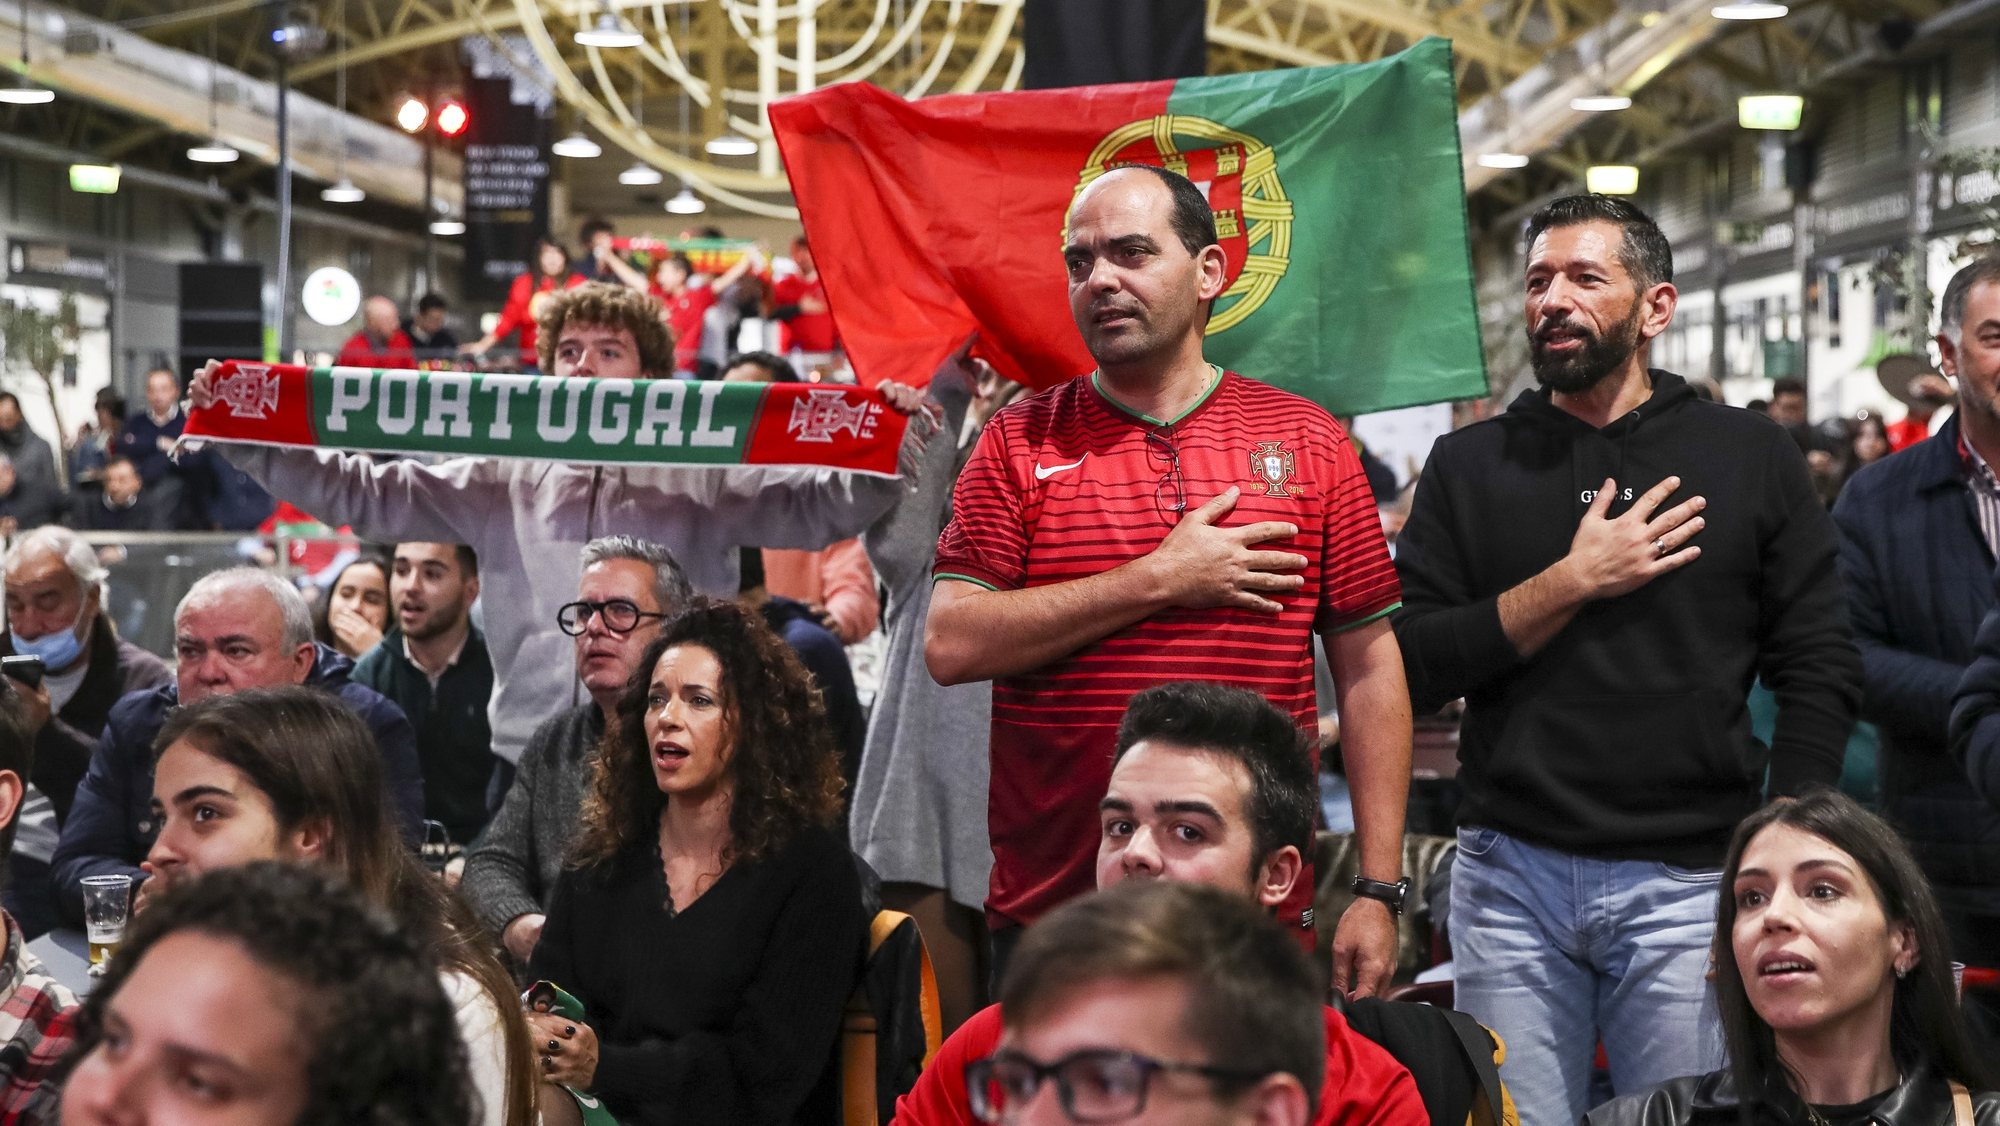 Adeptos portugueses assistem ao jogo entre as seleções de Portugal e Gana, que assinala o início da participação da seleção de Portugal, no Campeonato do Mundo do Qatar 2022, numa fan zone, no Mercado Municipal de Coimbra, 24 de novembro de 2022. PAULO NOVAIS/LUSA